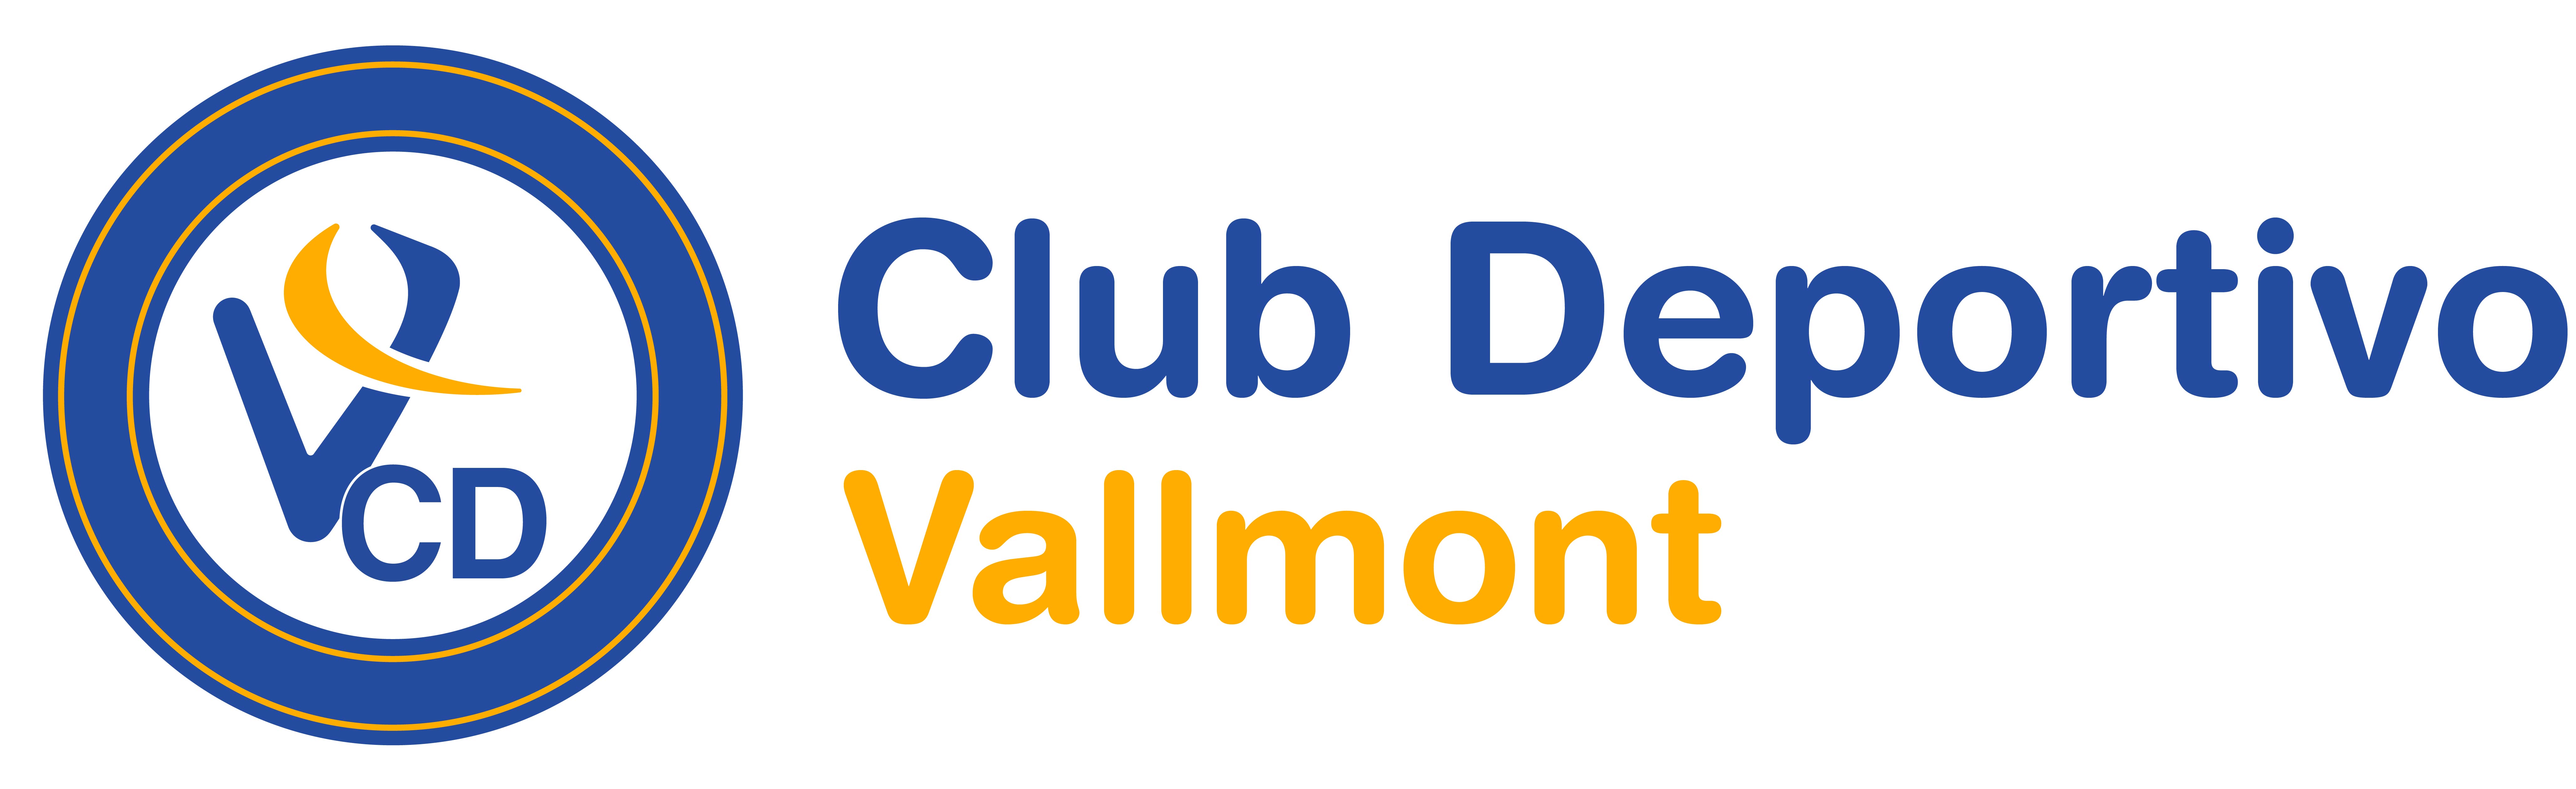 Logo CD Vallmont